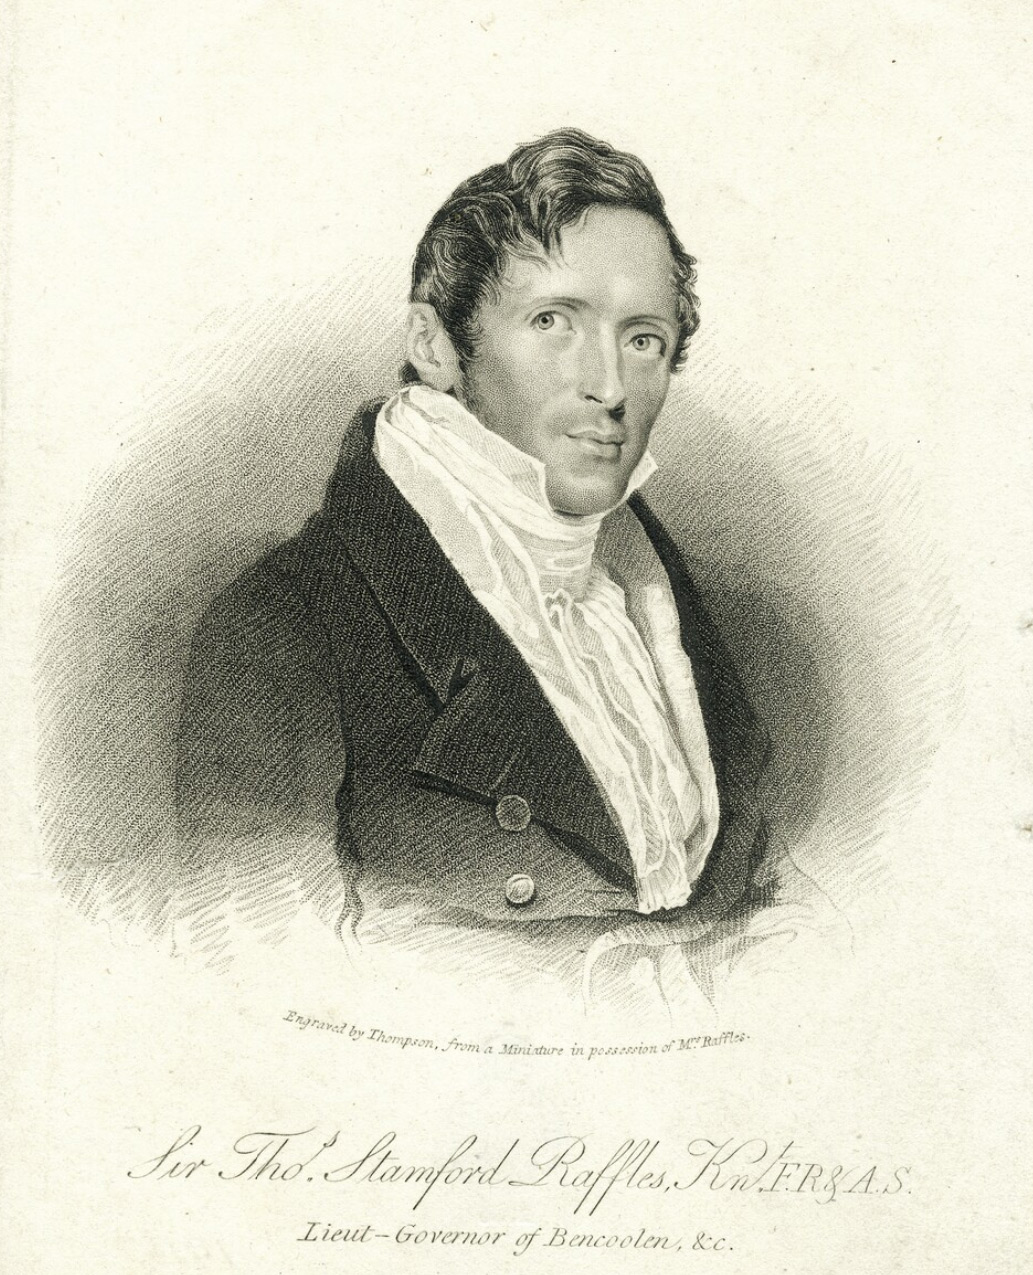 Sir Thomas Stamford Bingley Raffles, 1824 by James Thomson